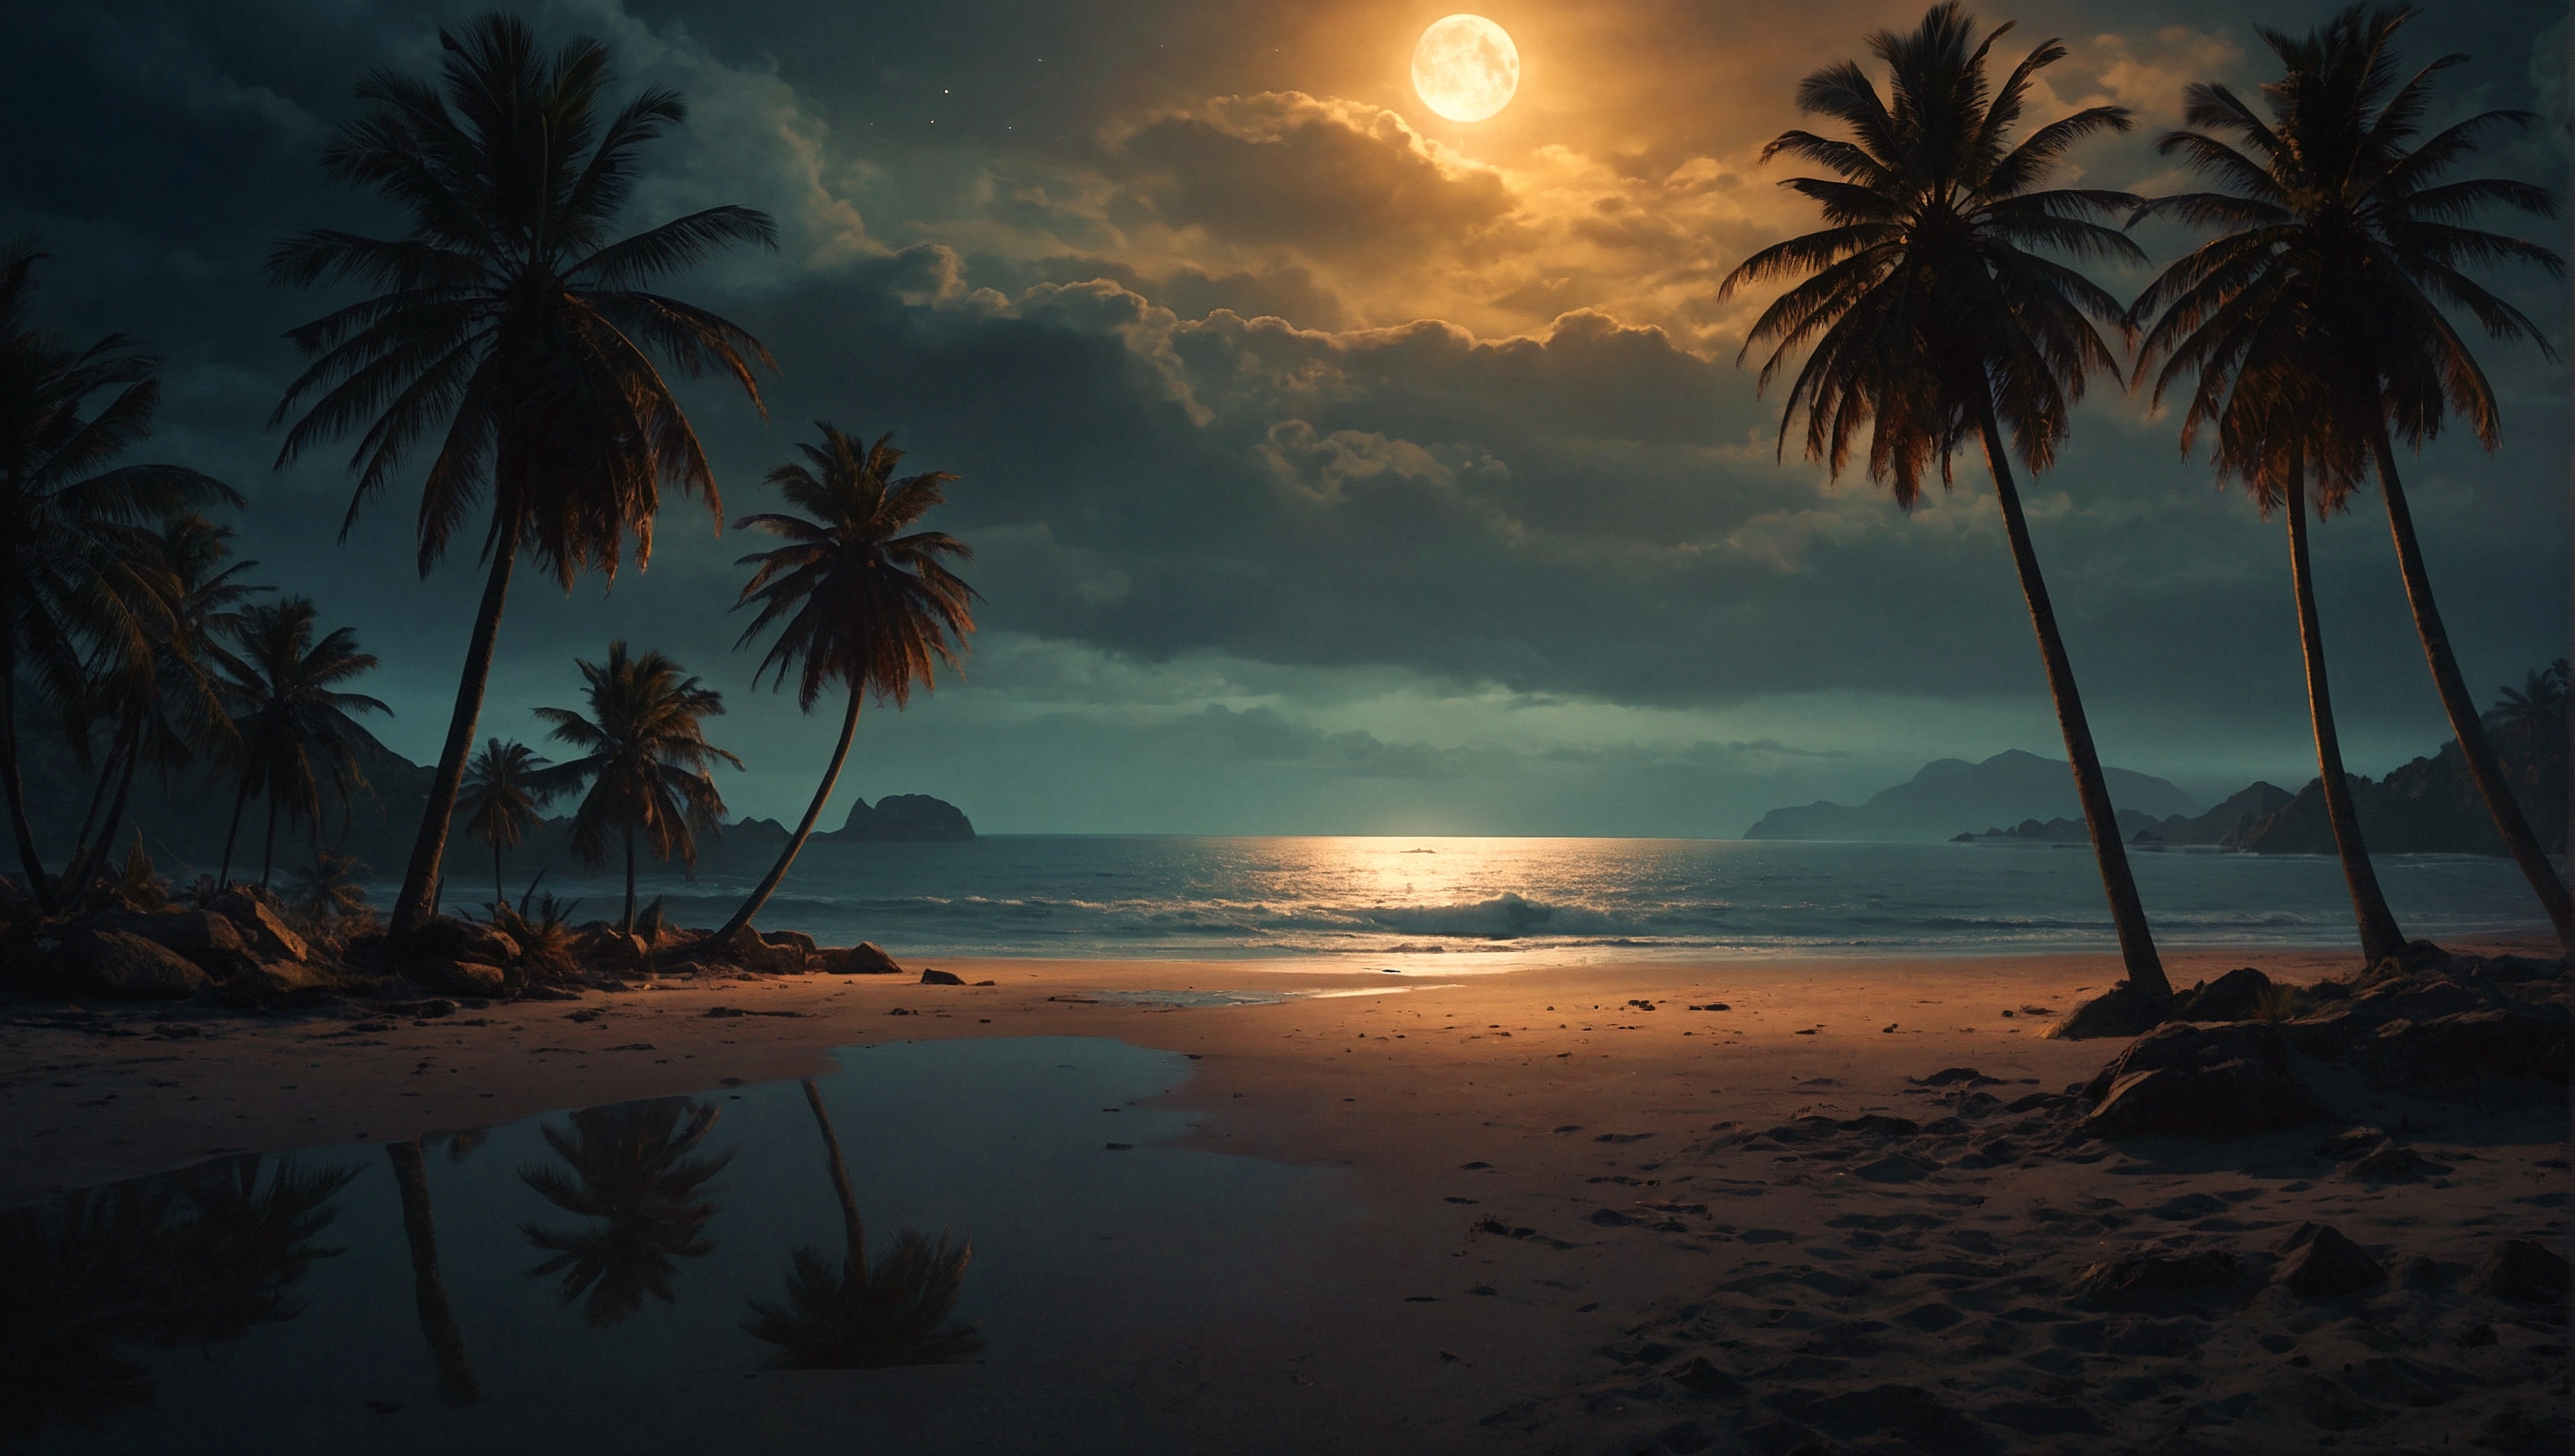 月光洒在棕榈树前